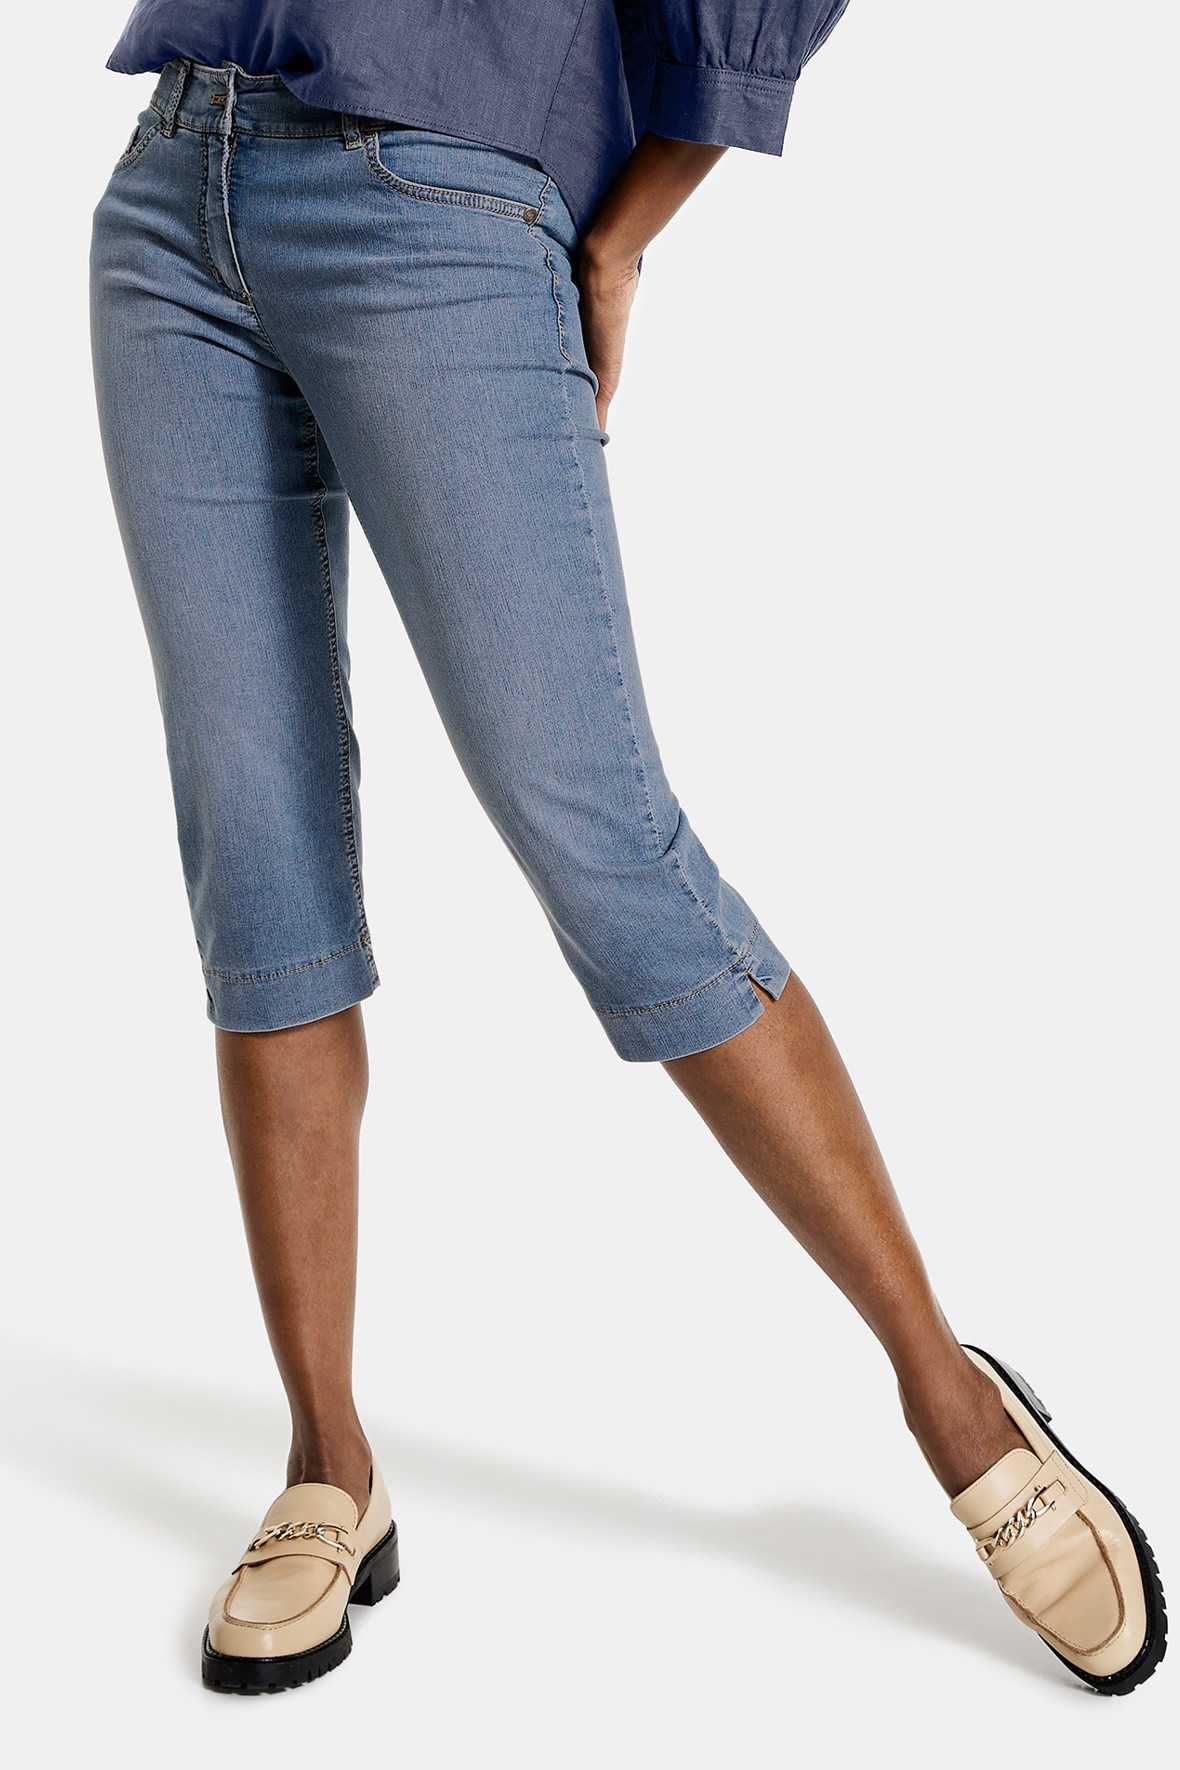 appetit Skabelse Sidst Gerry Weber capri bukser jeans . skinny fit - denim til kvinder - Hos Lohse